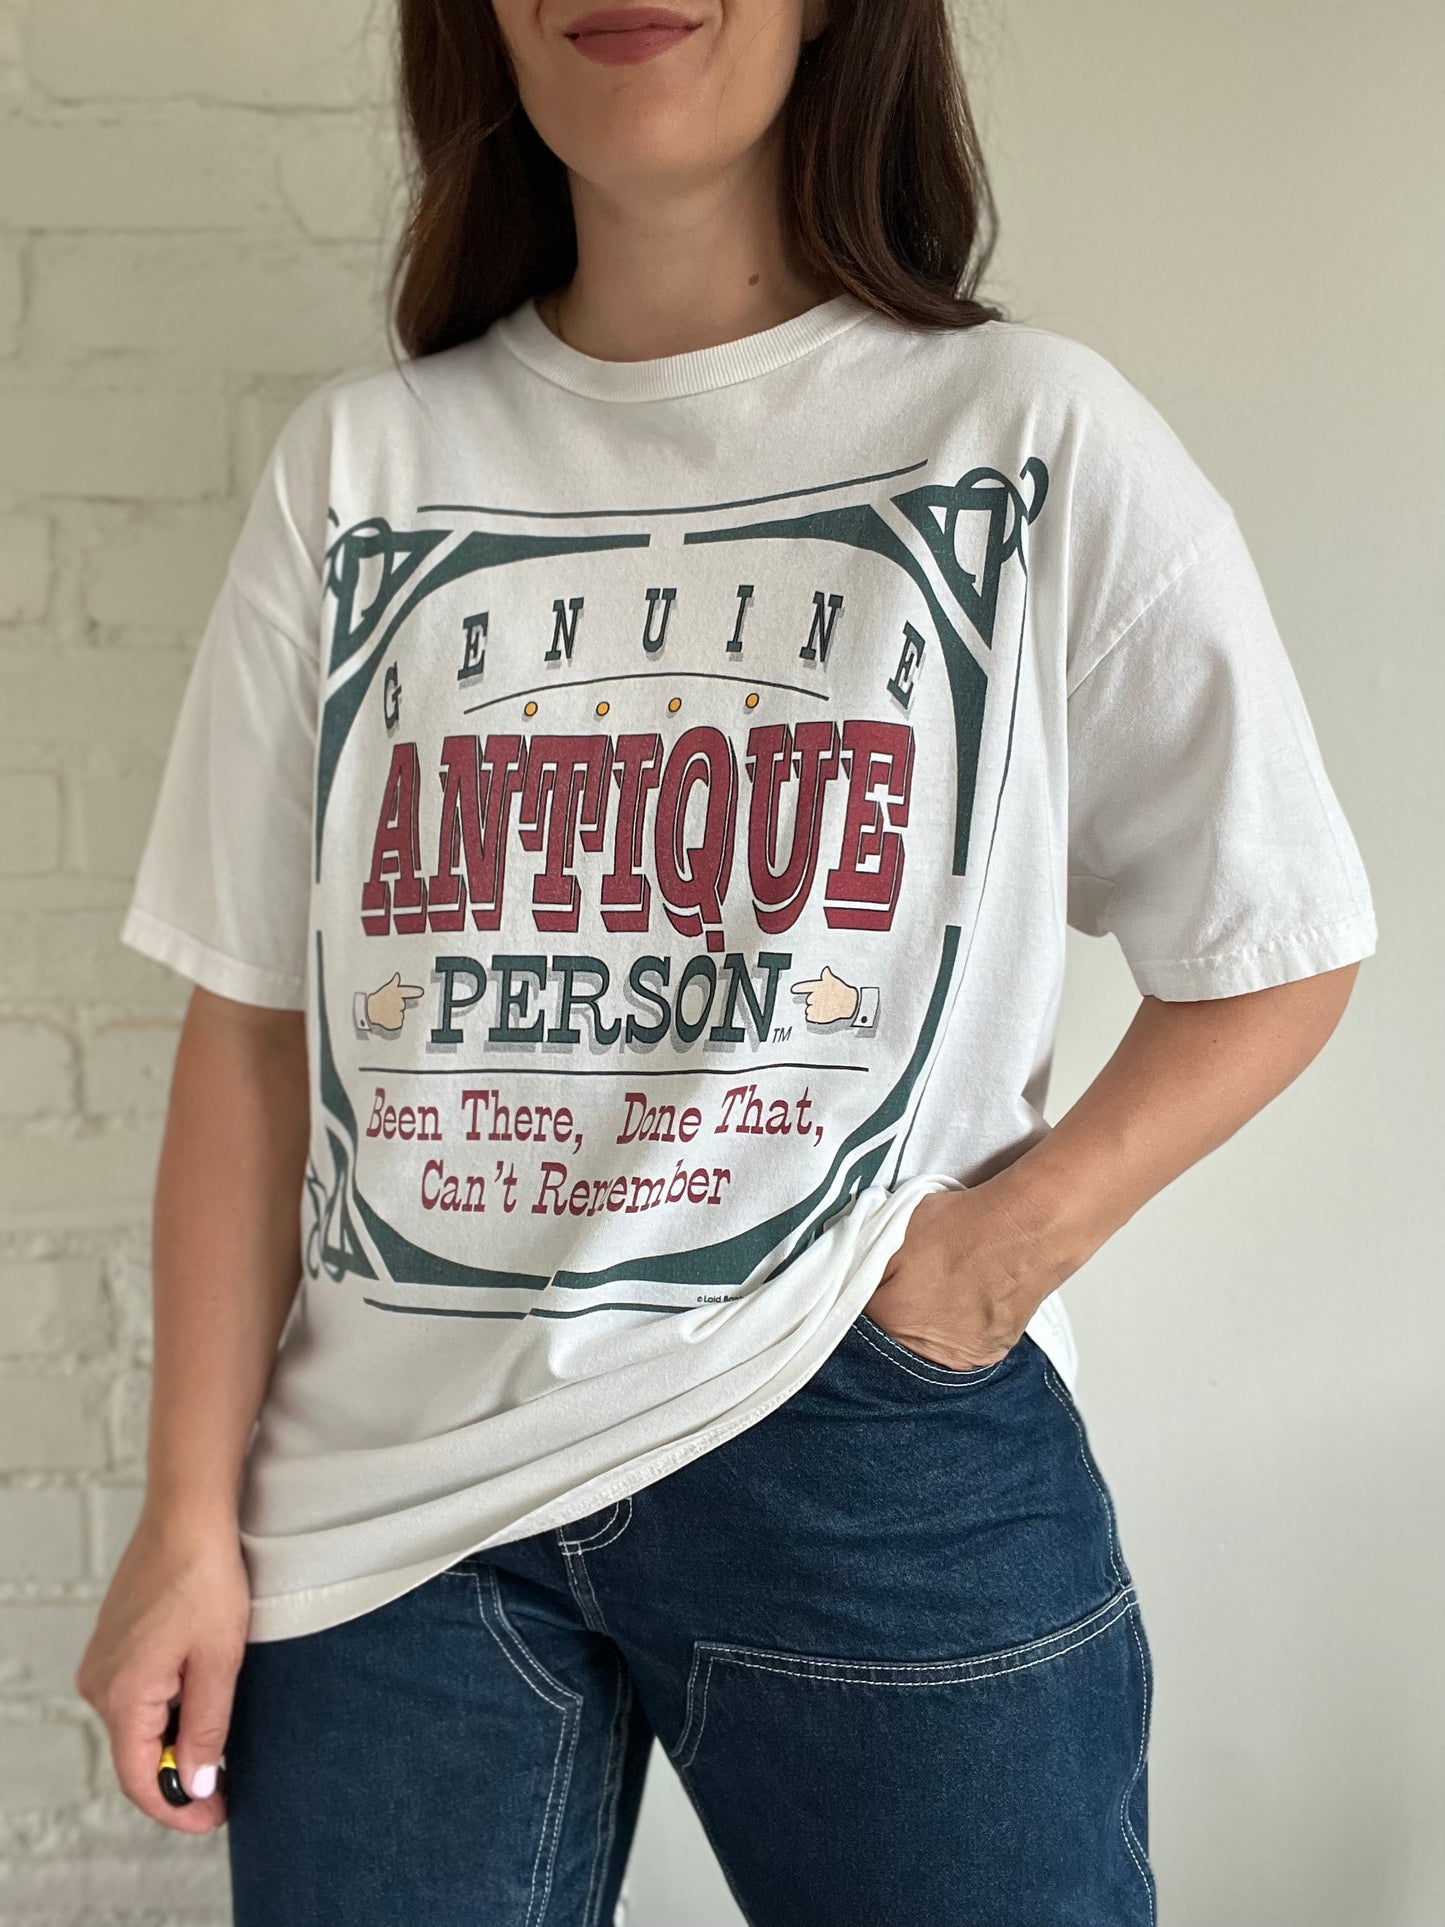 Genuine Antique Person T-Shirt - Size XL